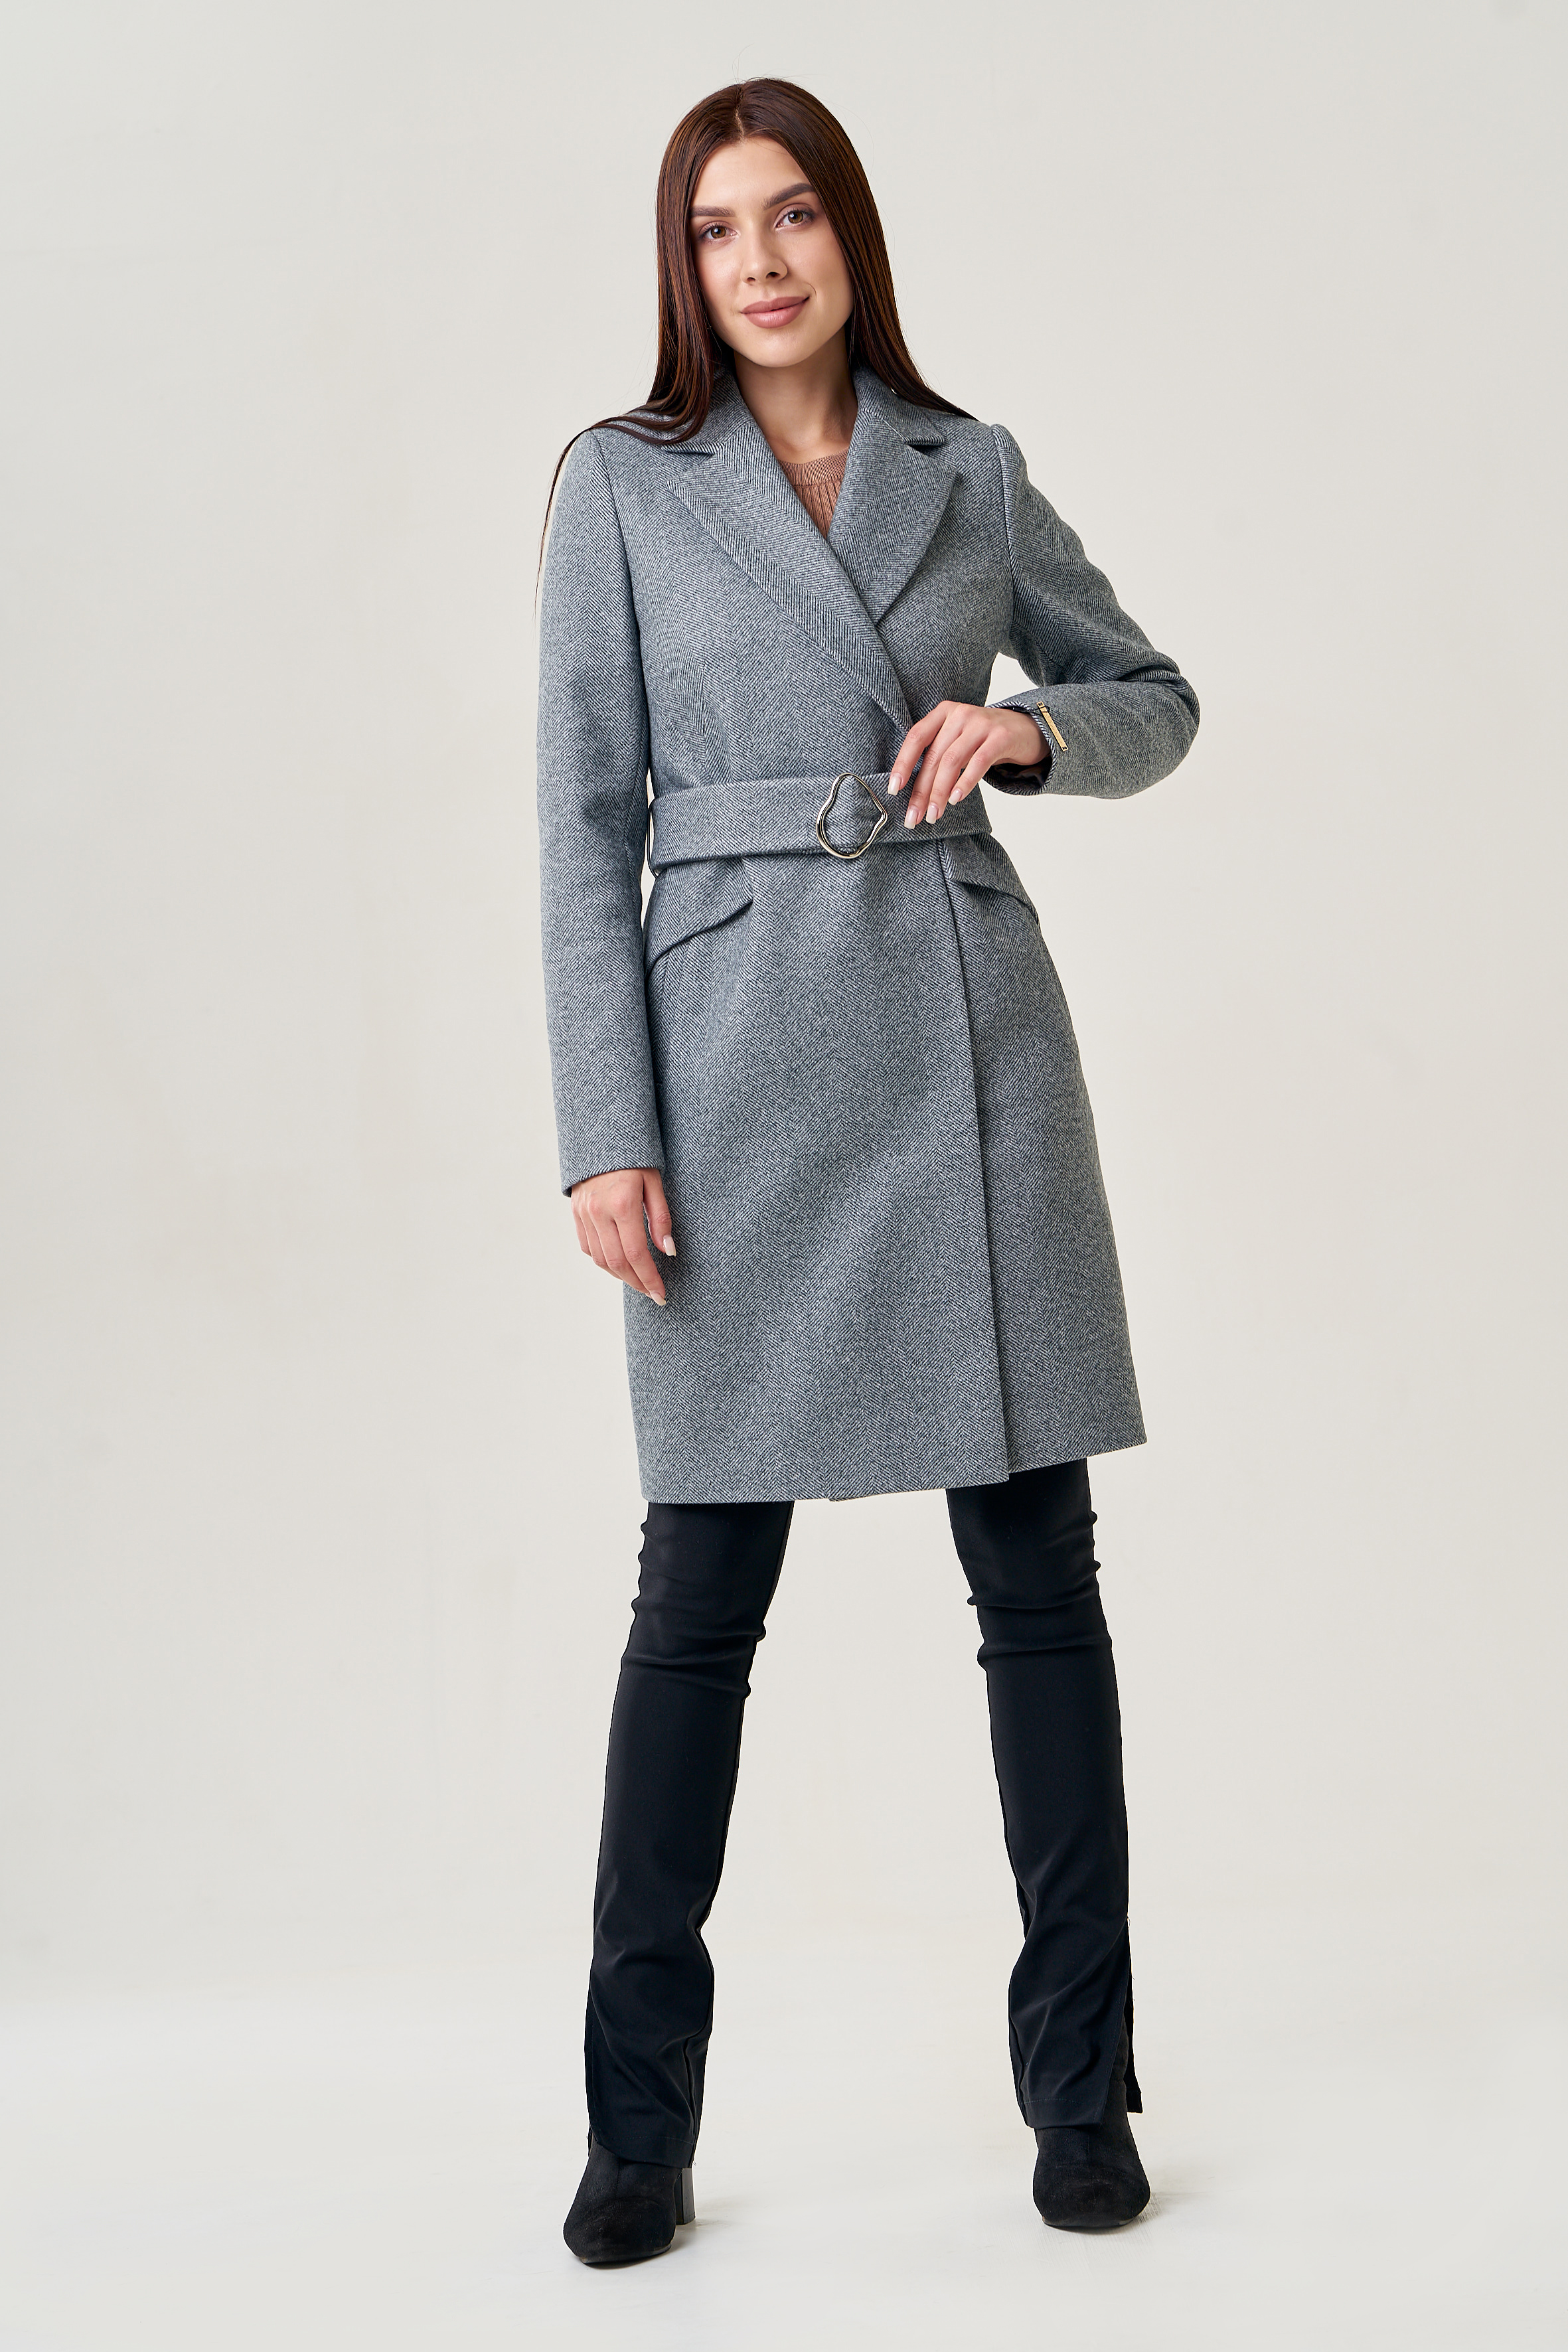 Женское пальто серого цвета с поясом 75566 (серый) купить в интернет-магазине с доставкой